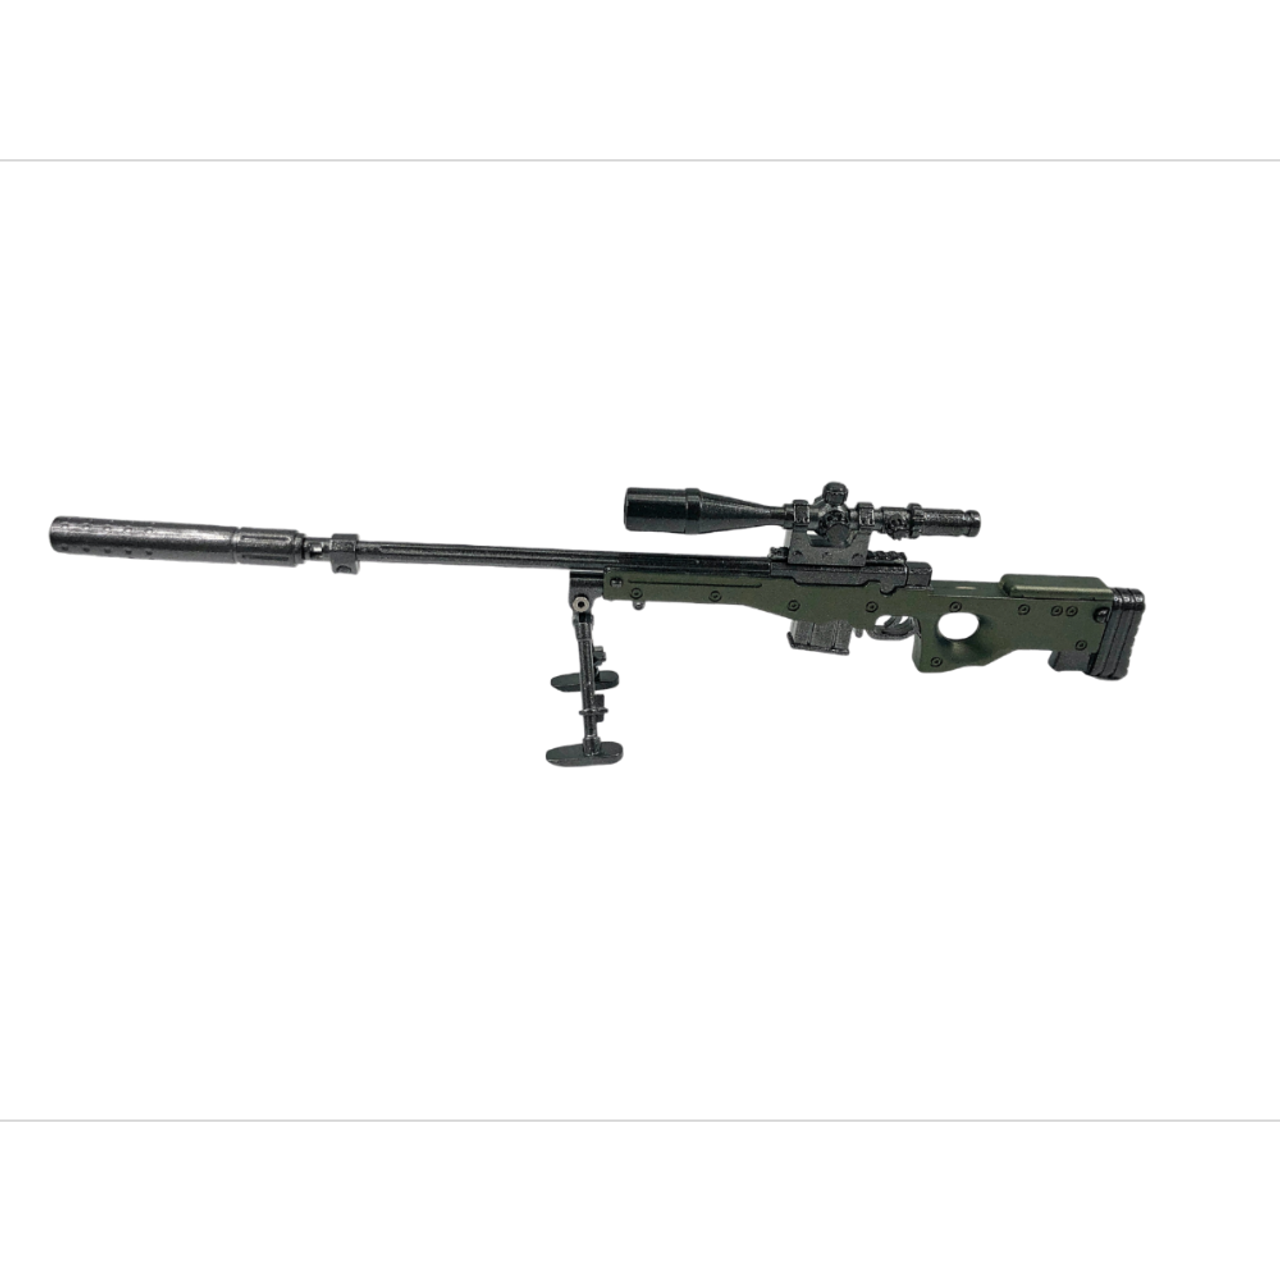 Miniature AWM 338 Sniper Model | 1/5 Scale Replica Non-firing Collectible  Model